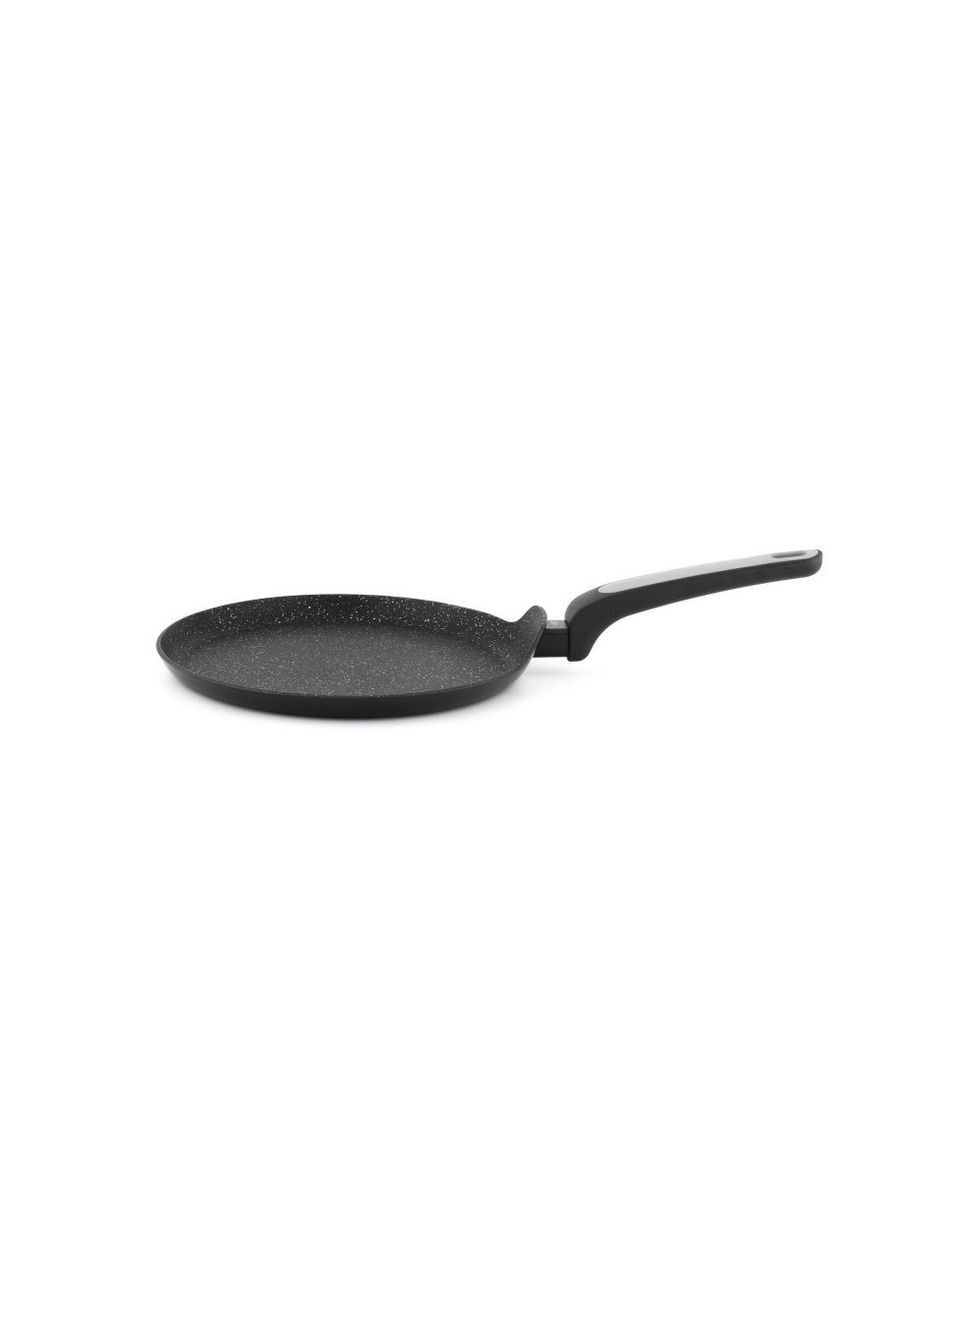 Сковорода для блинов salto silver диаметром 26 см. алюминий черный универсальная NOIS (287340038)